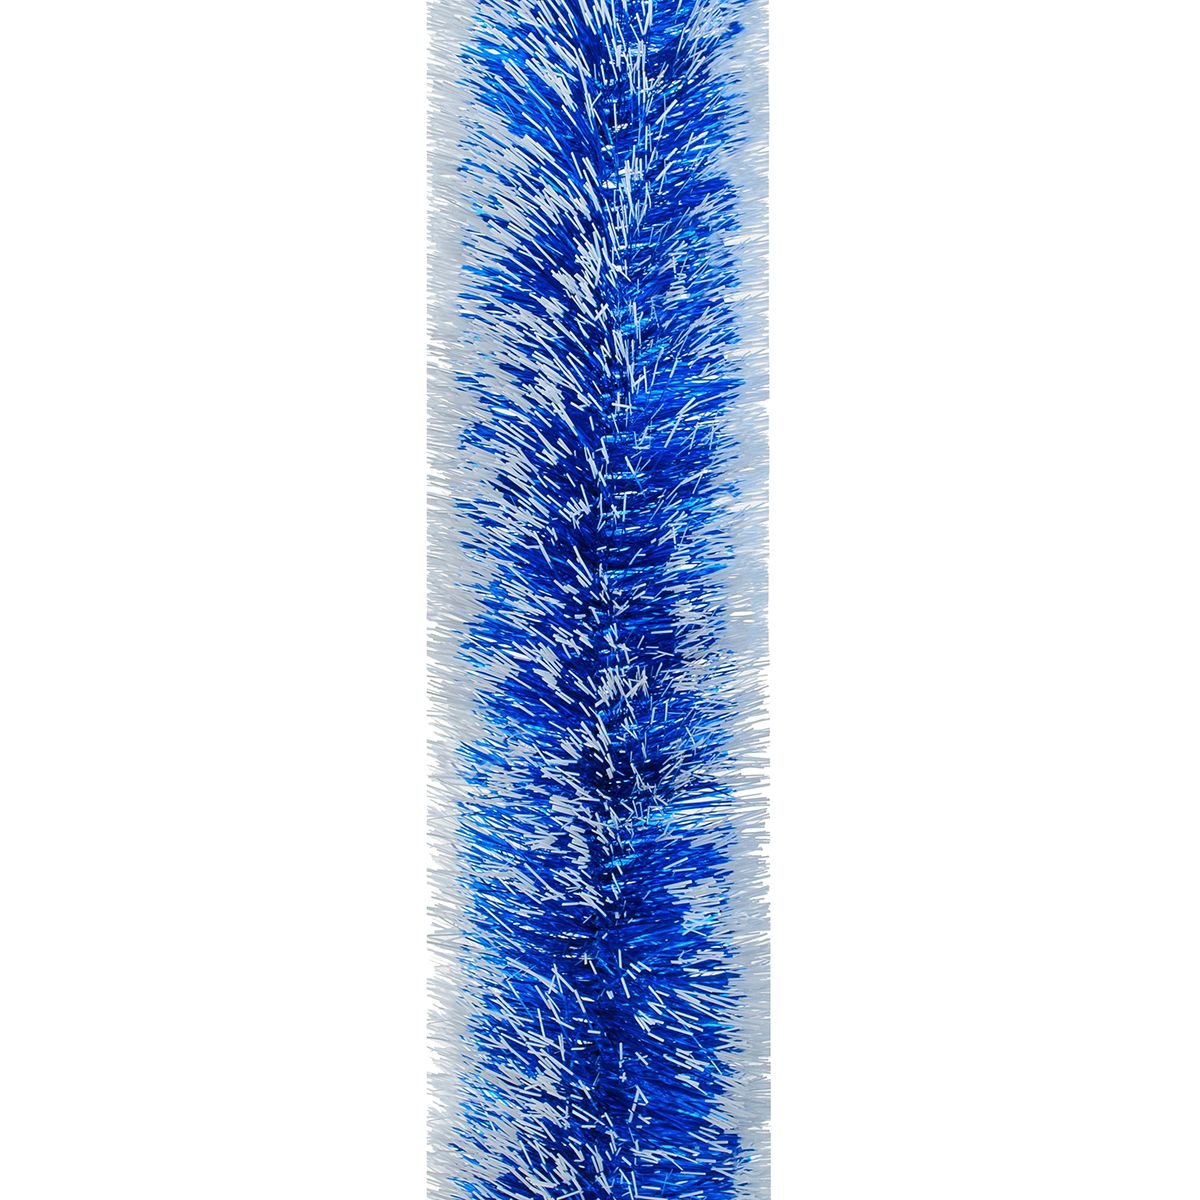 Мішура Novogod'ko 10 см 3 м синя з білими кінчиками (980336) - фото 1